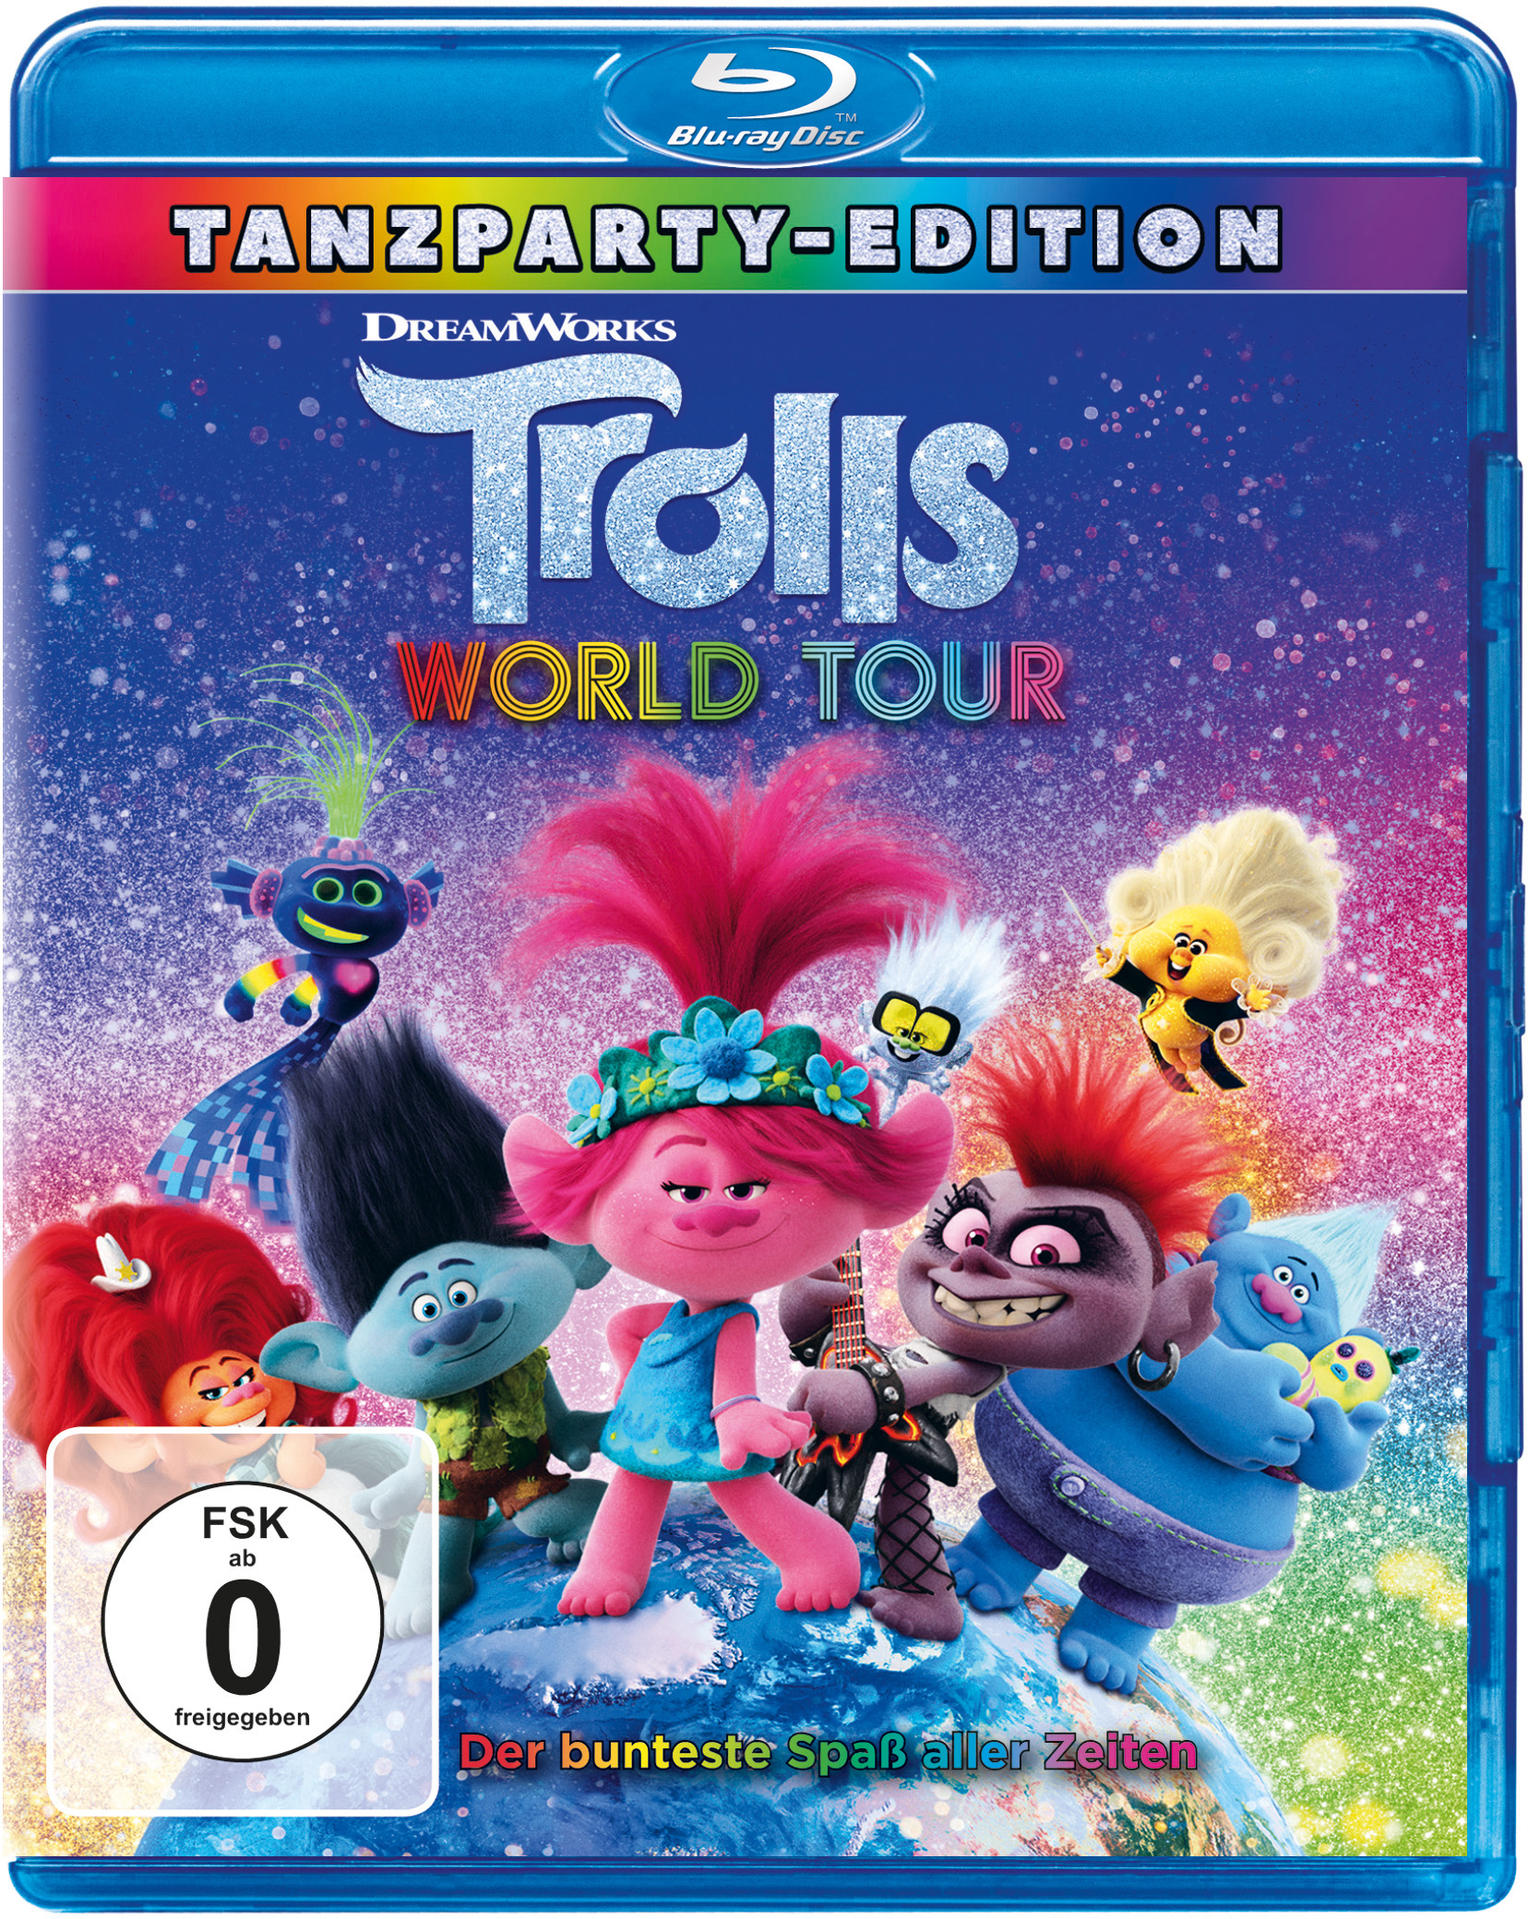 Trolls Trolls 2 World Tour - Blu-ray